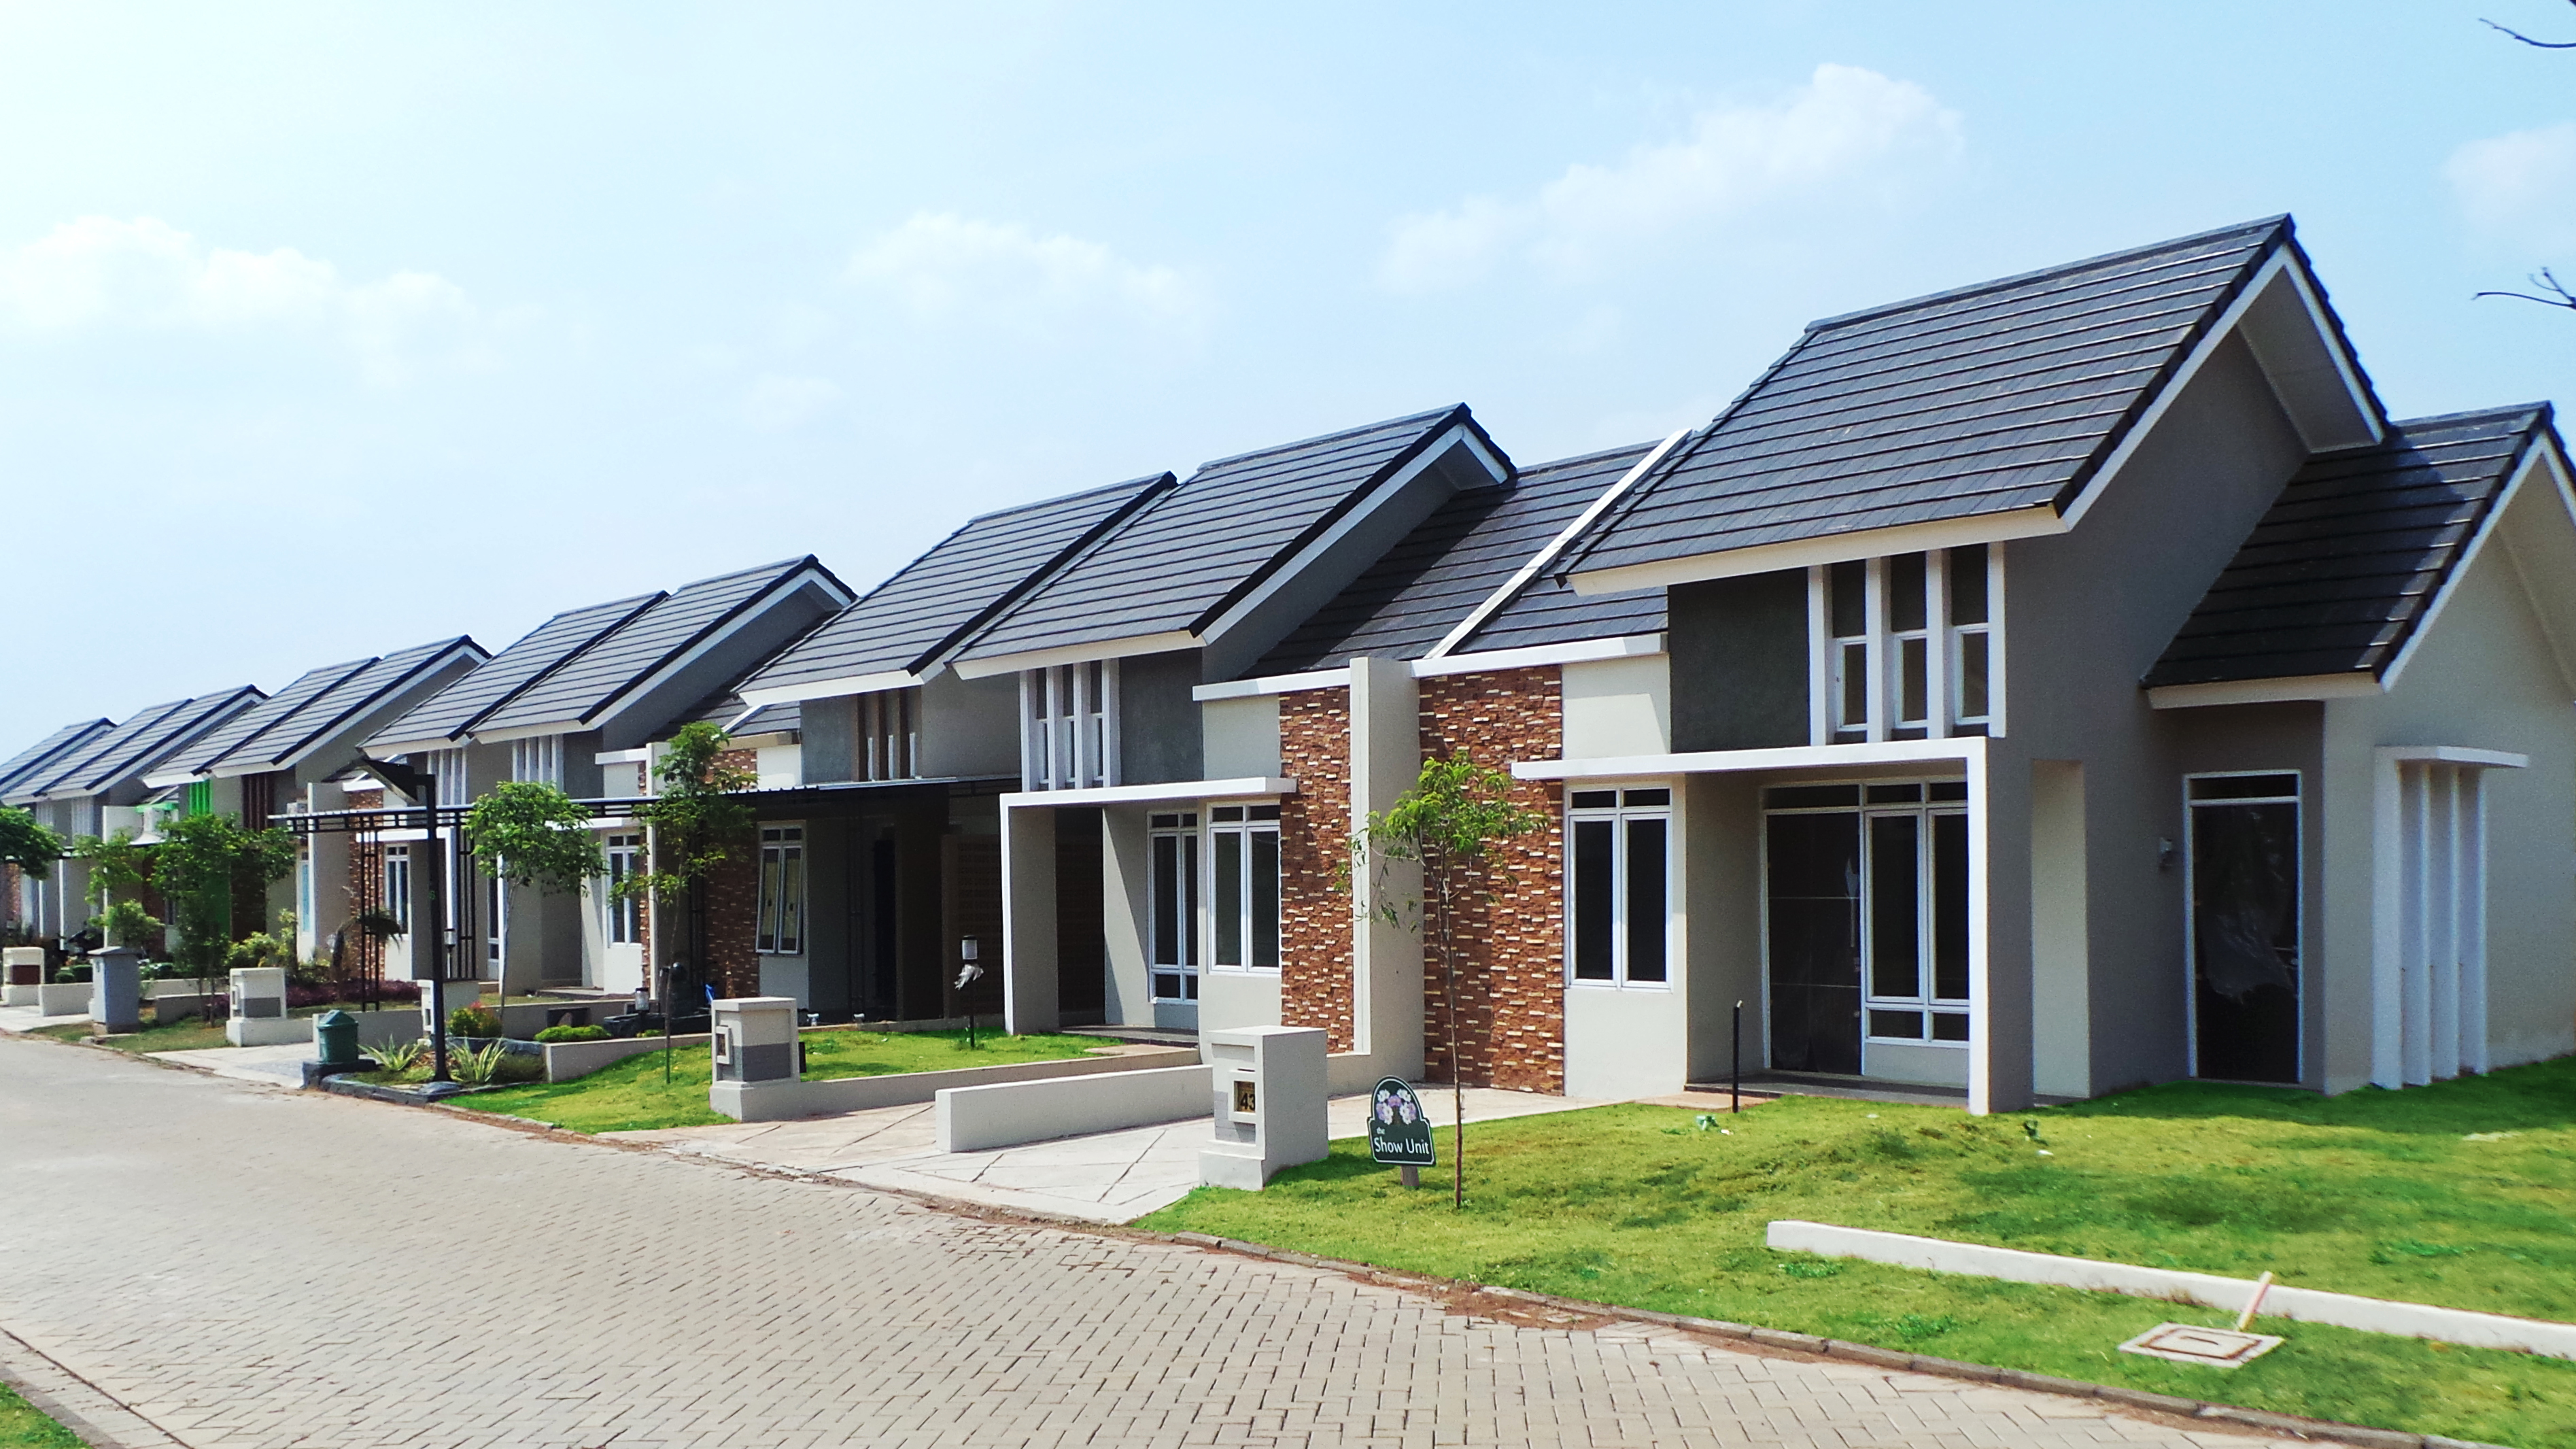  metland persembahan developer property terbaik di indonesia - 2